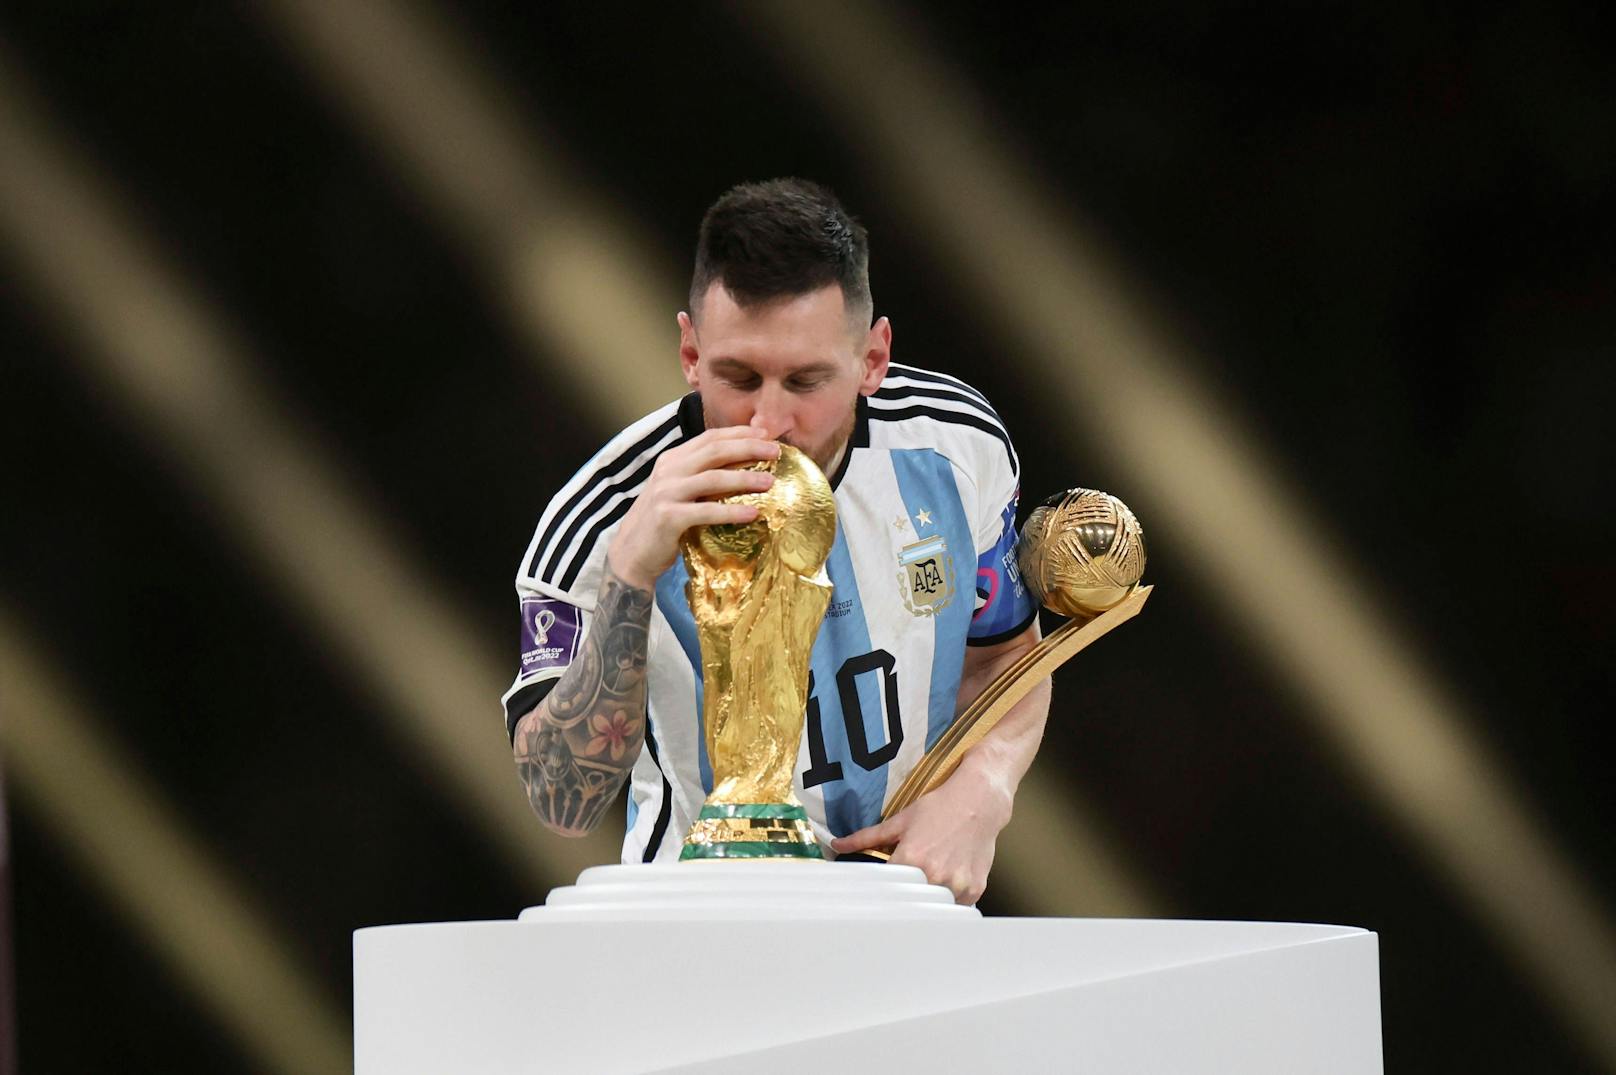 Argentinien benennt Trainingszentrum nach Messi